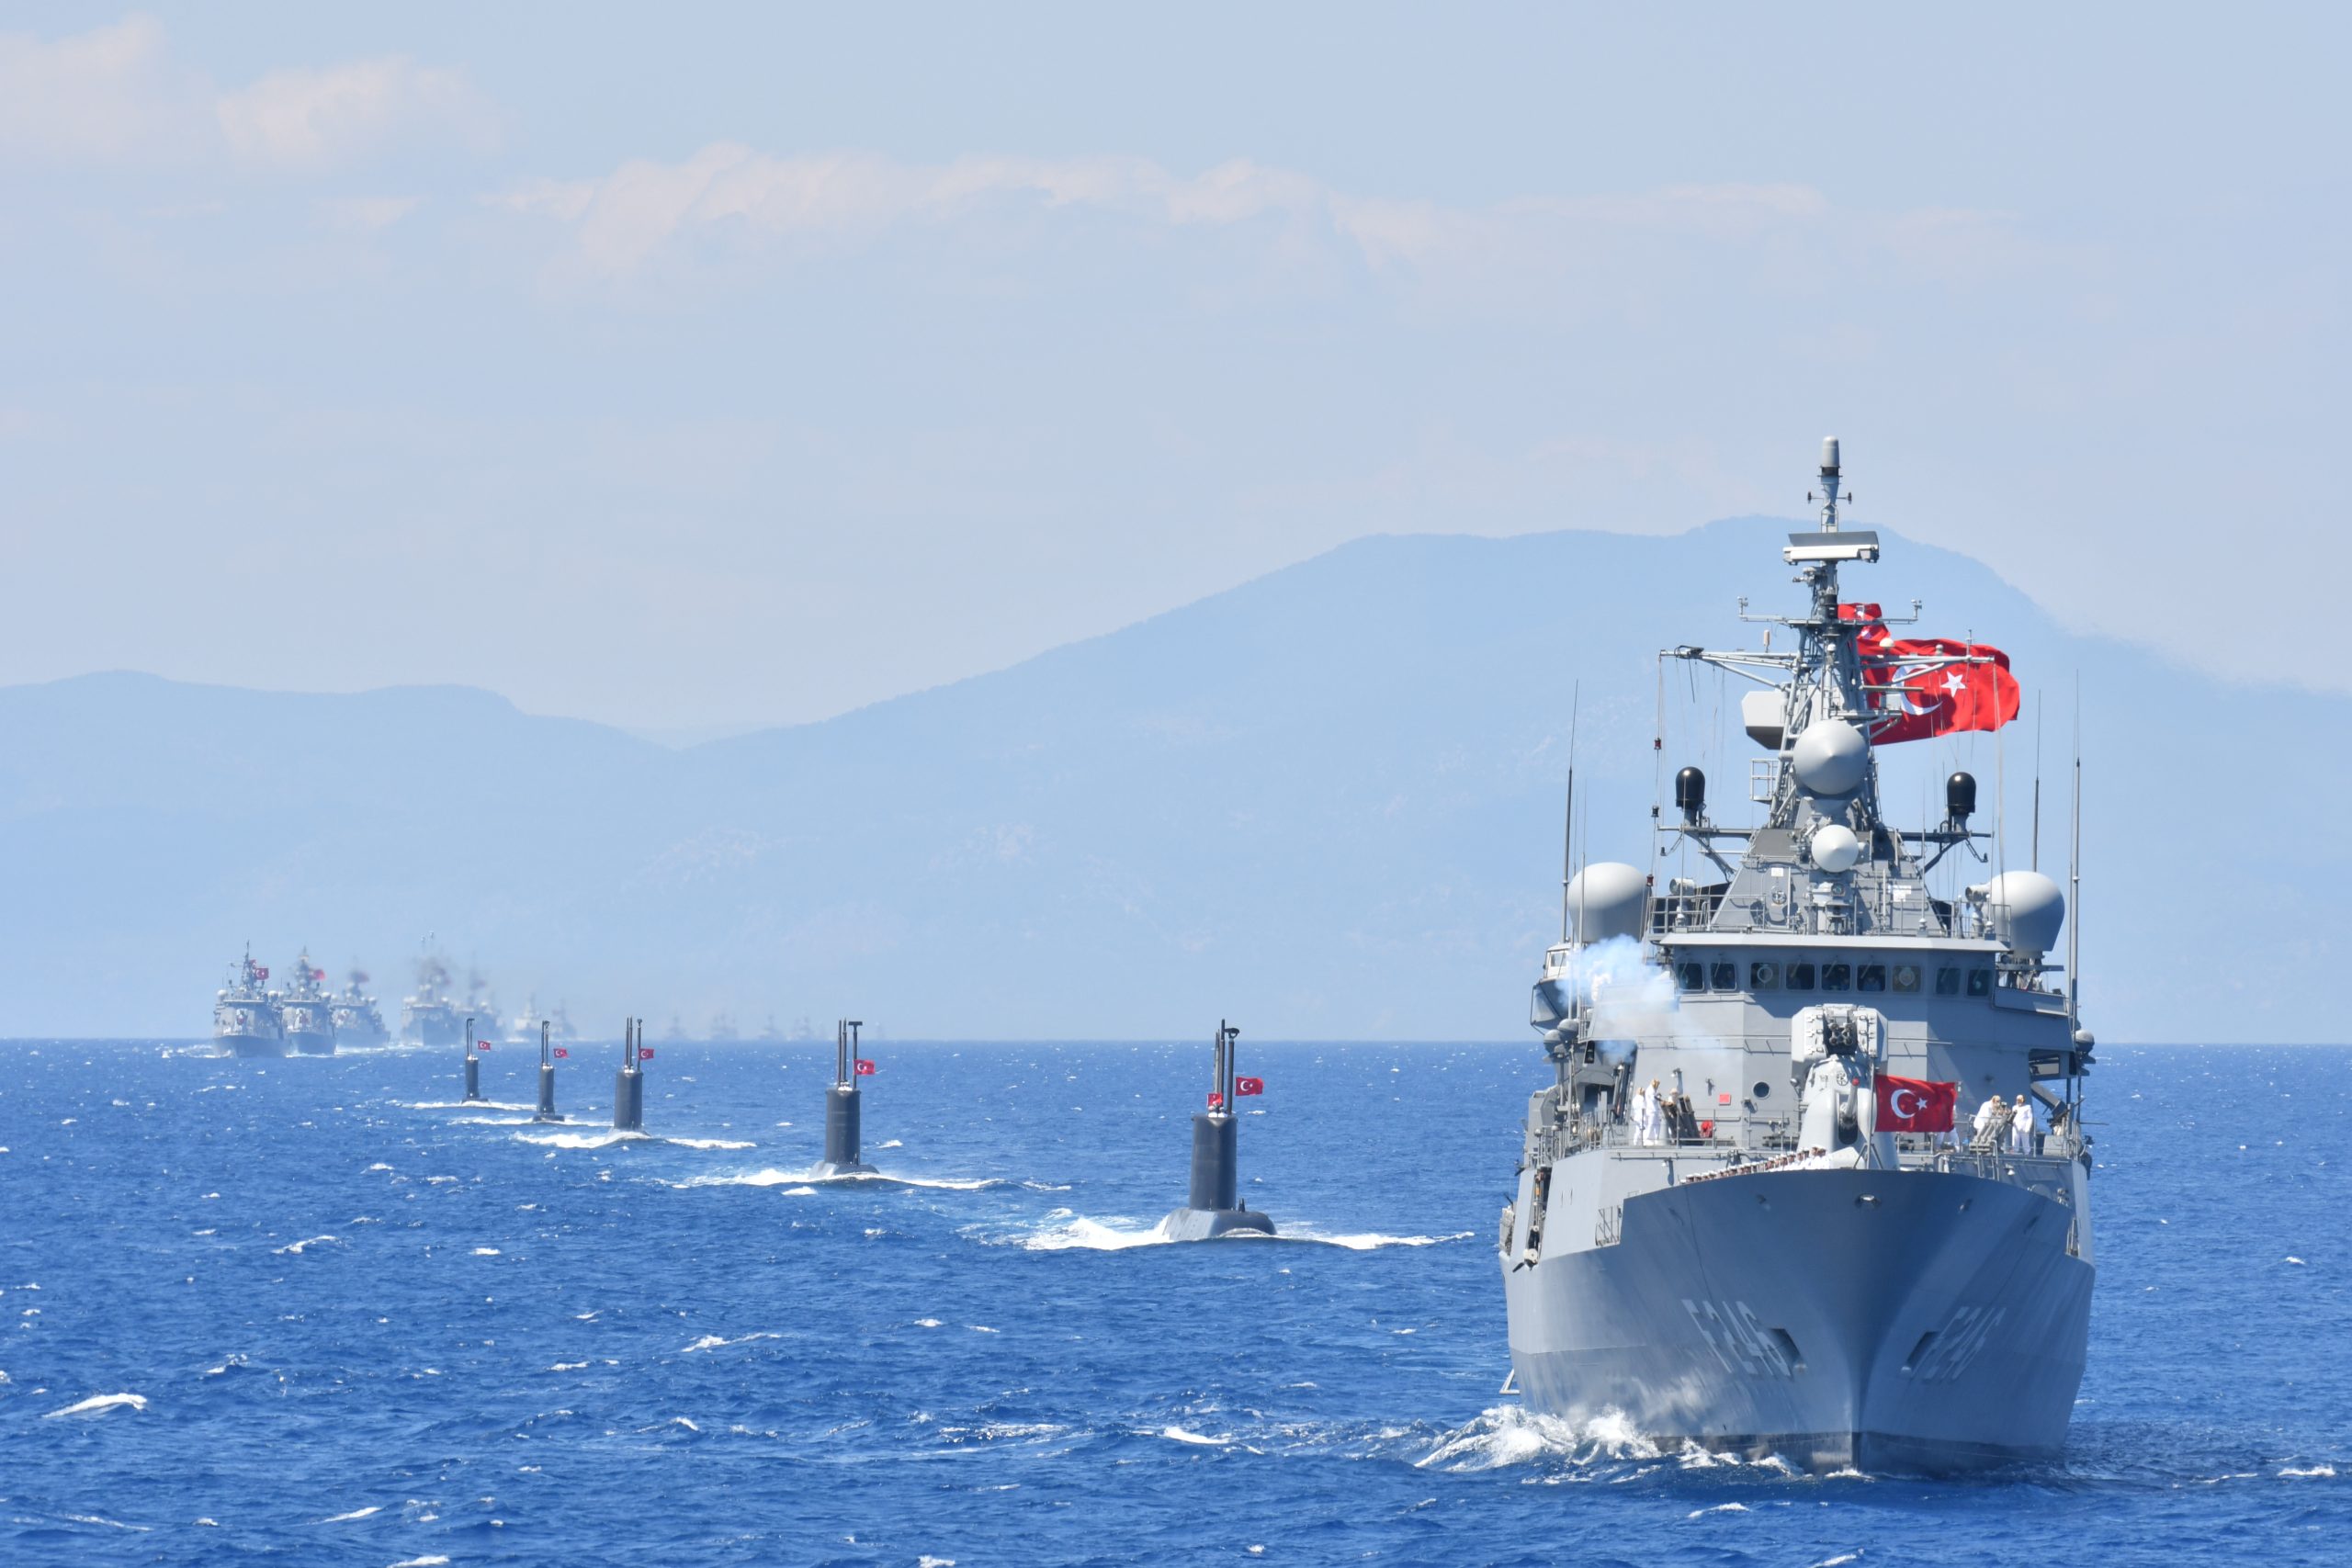 Ενισχύει τις δυνάμεις της γύρω από την πλατφόρμα η Τουρκία: 3  φρεγάτες και 1 υποβρύχιο απειλούν το “West Capella”